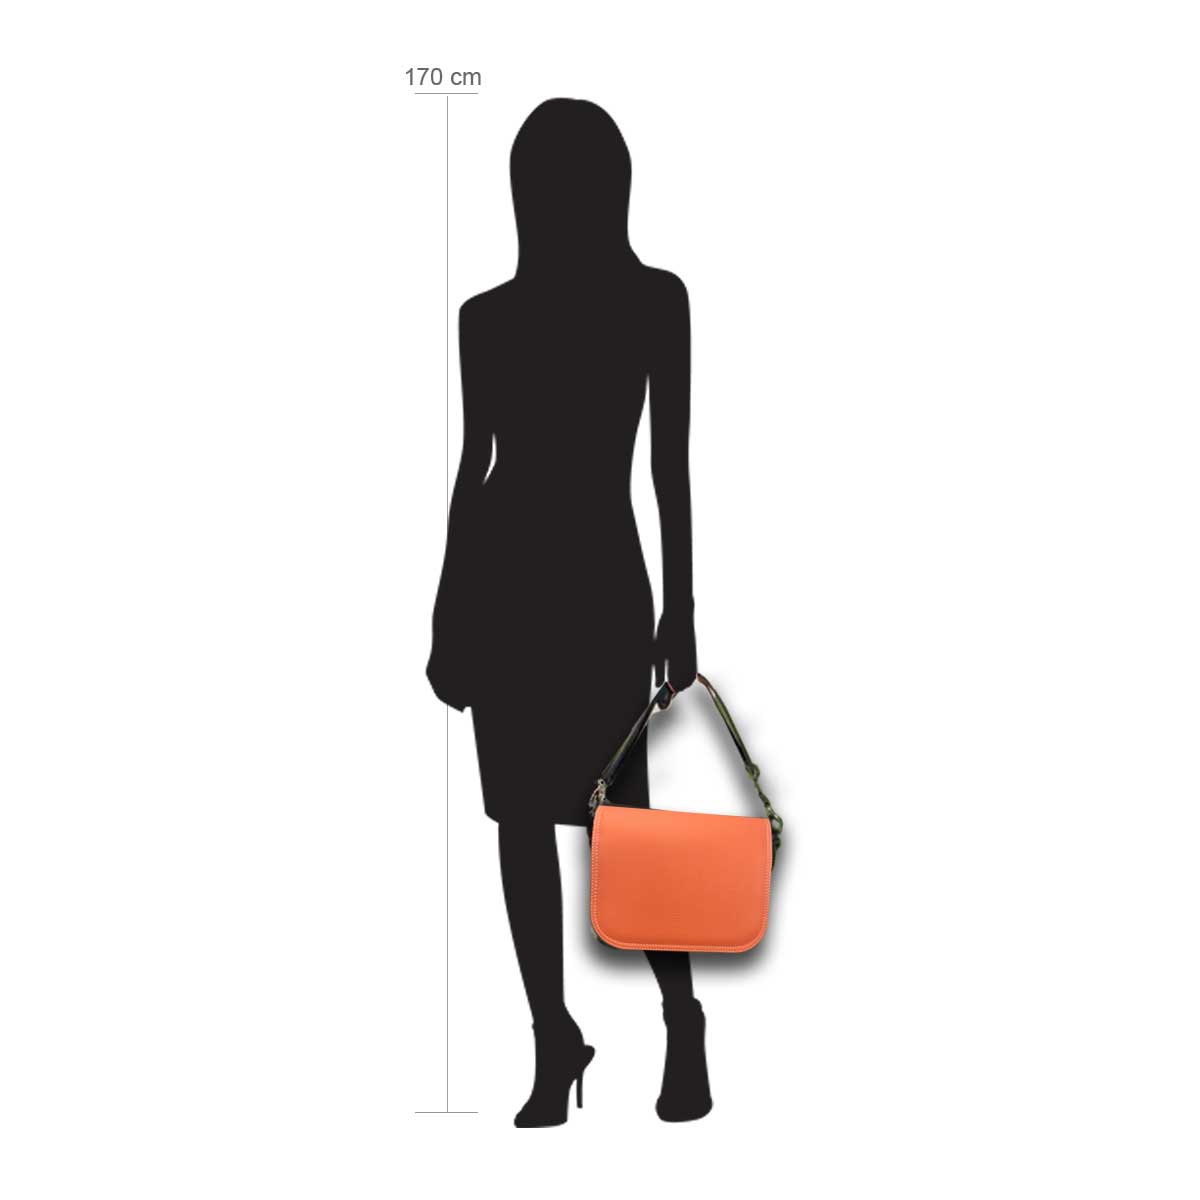 Modellpuppe 170 cm groß zeigt die Handtaschengröße an der Person Modell:Orange